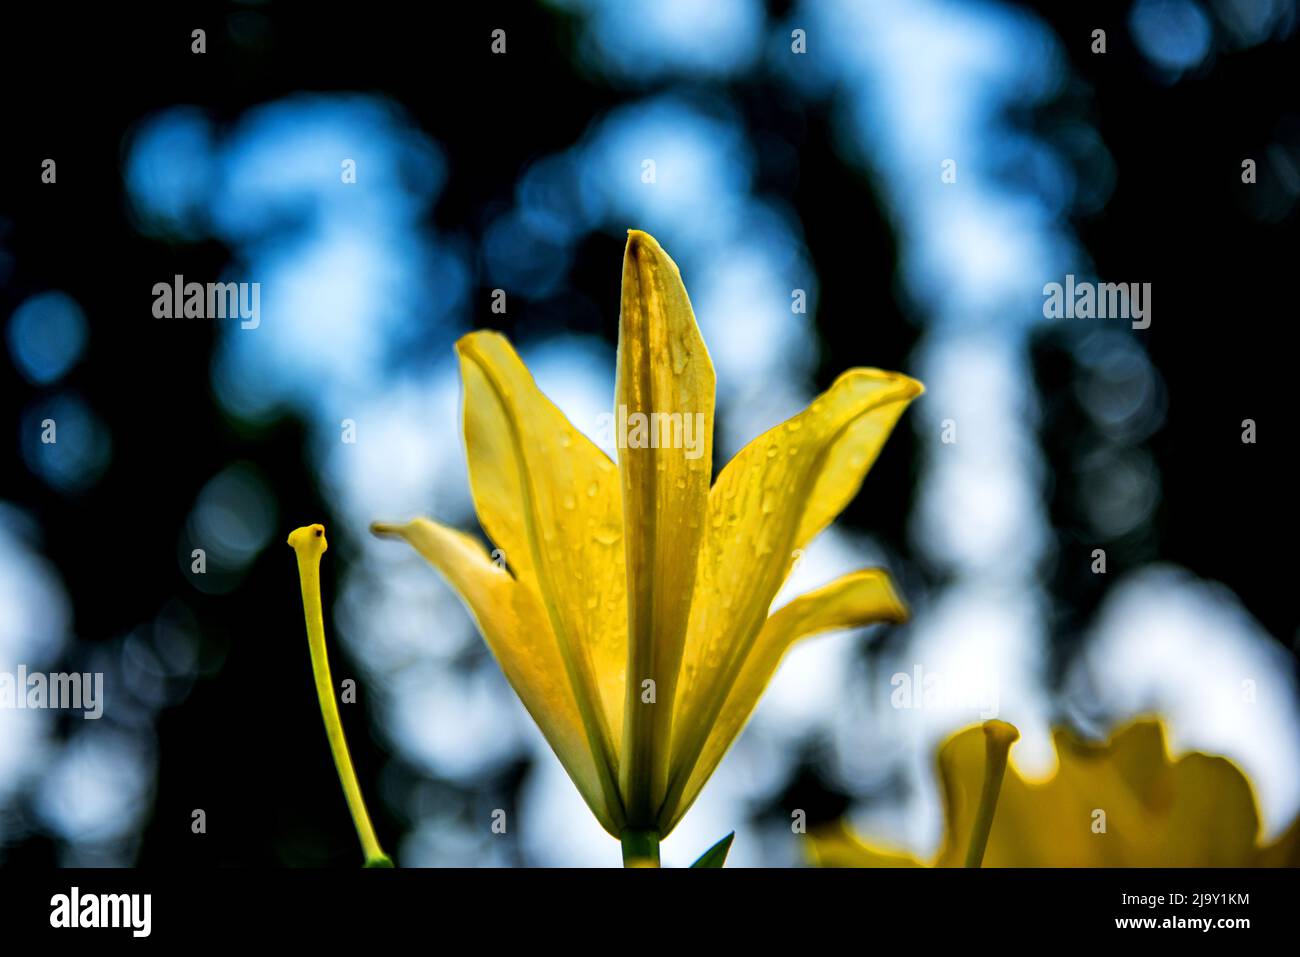 The beautiful yellow lily,Lilium longiflorum Thunberg in garden. Stock Photo